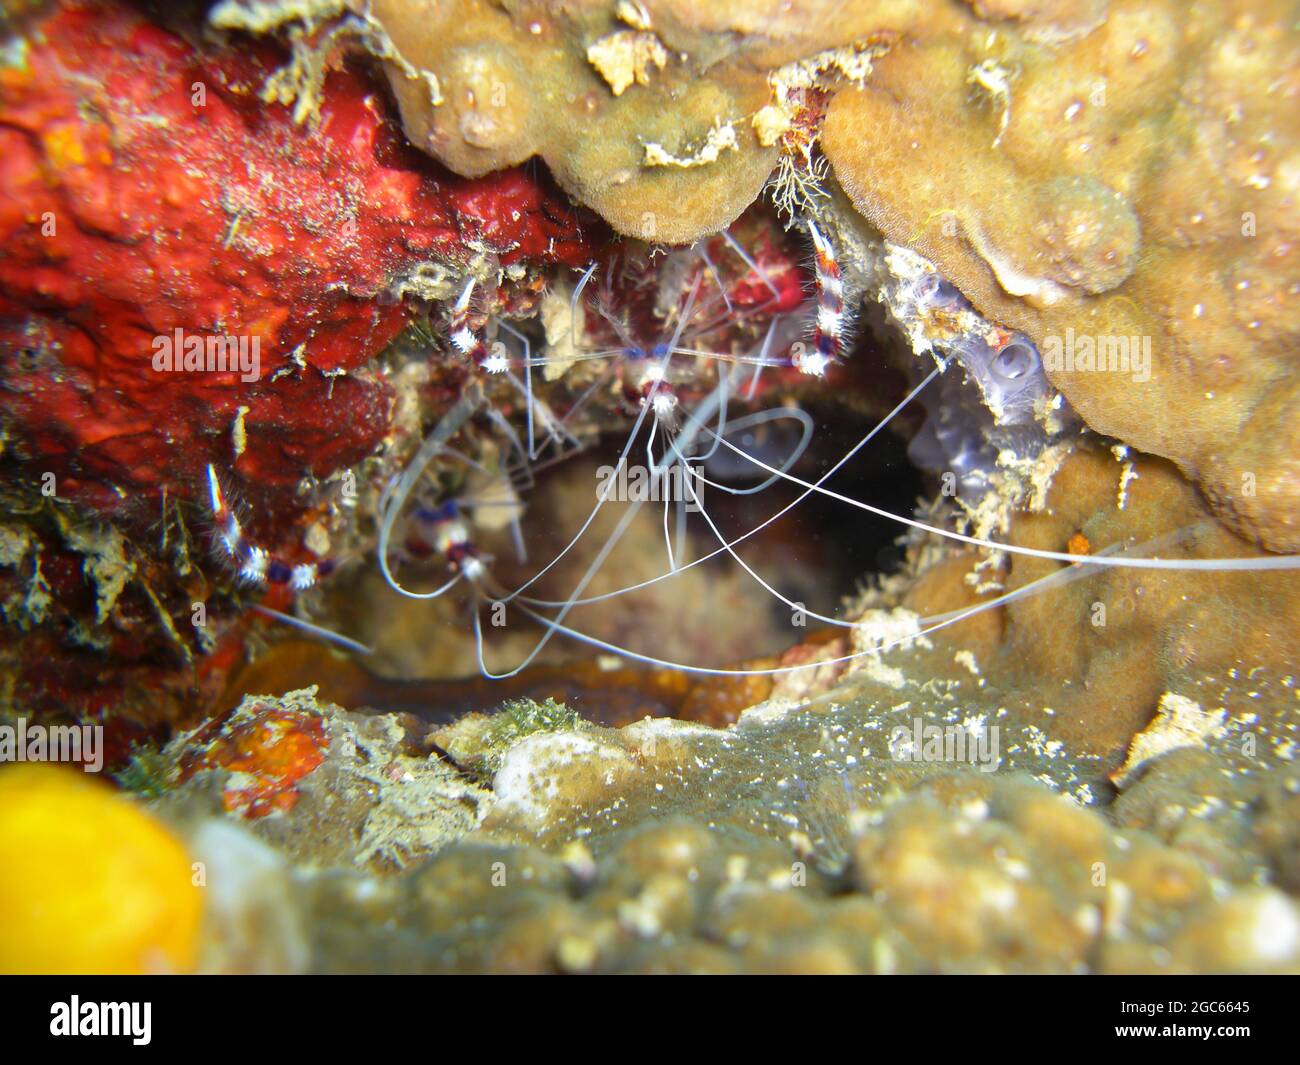 Nettoyage de la crevette (Lysmata amboinensis) au sol dans la mer philippine 22.11.2012 Banque D'Images